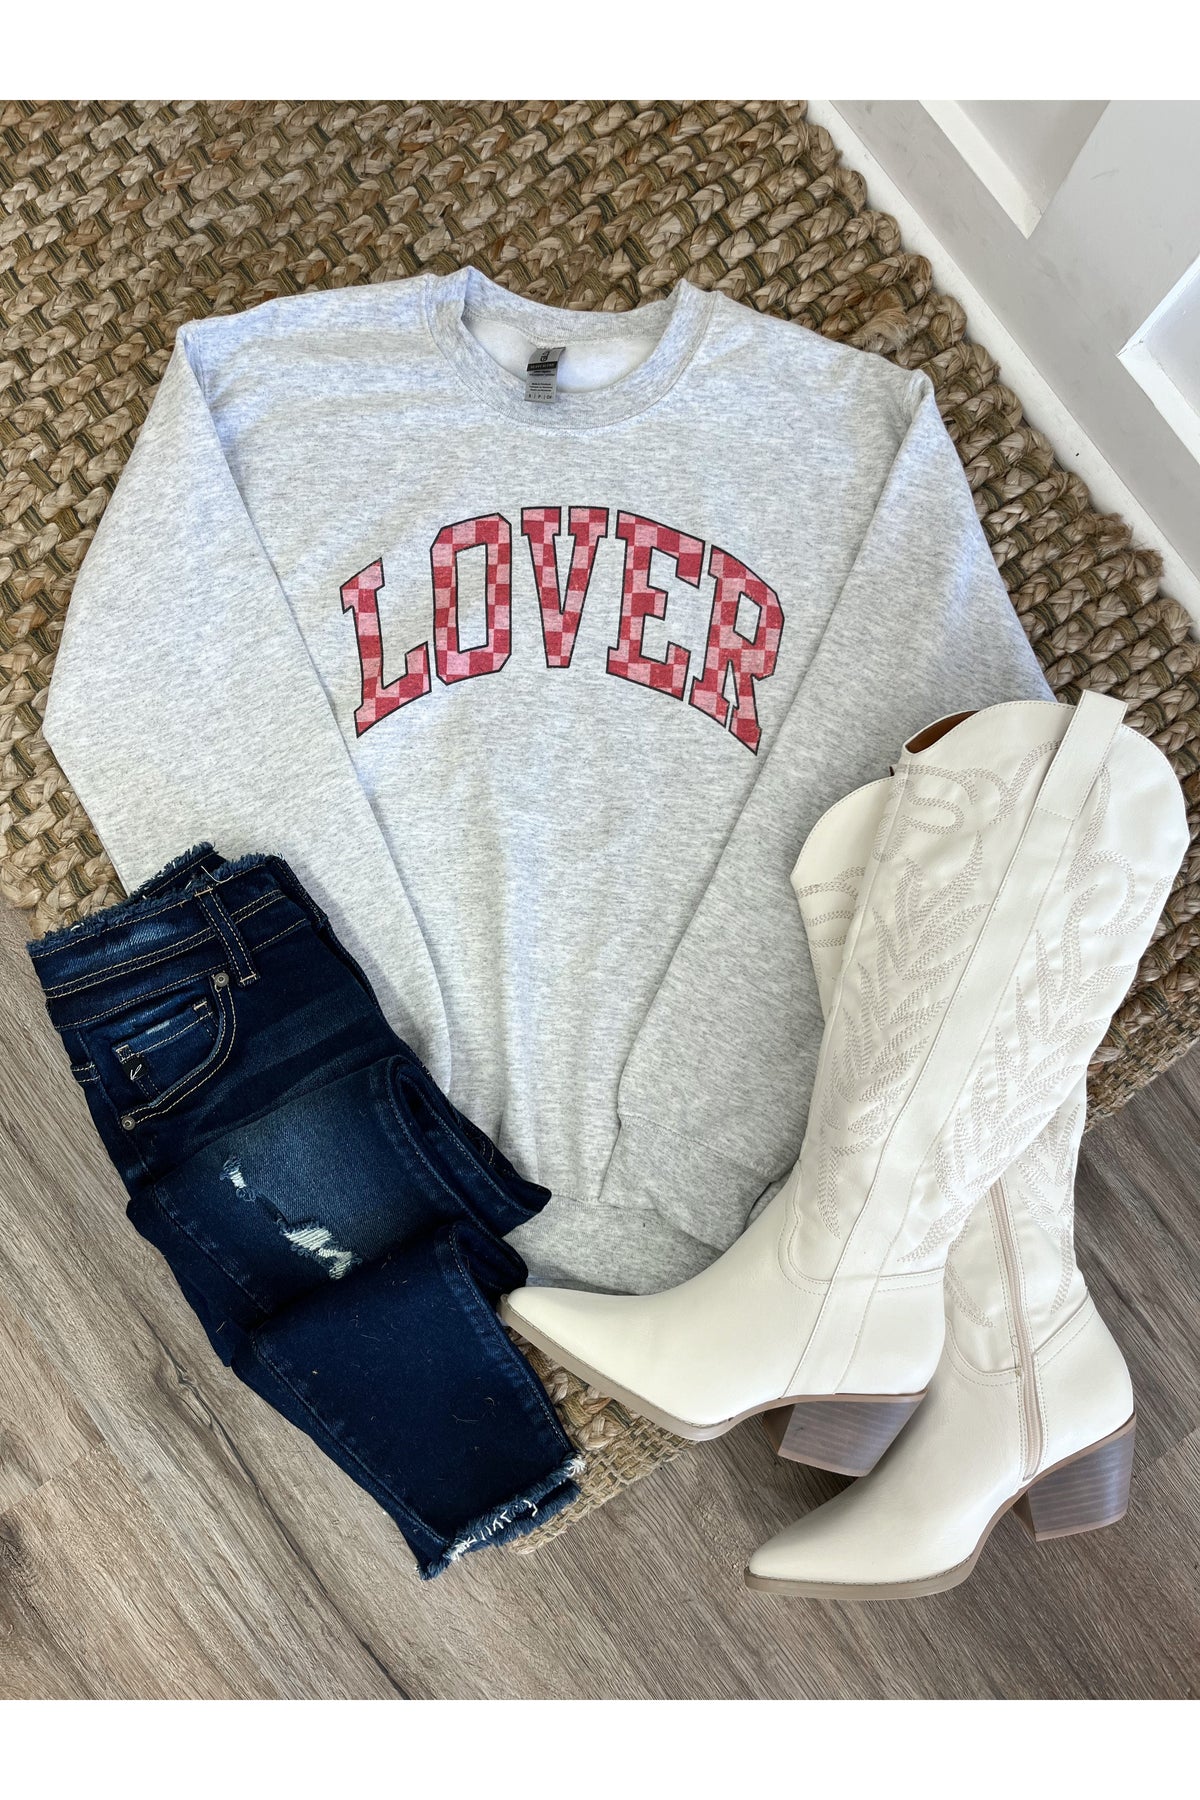 Lover Valentine Graphic Sweatshirt